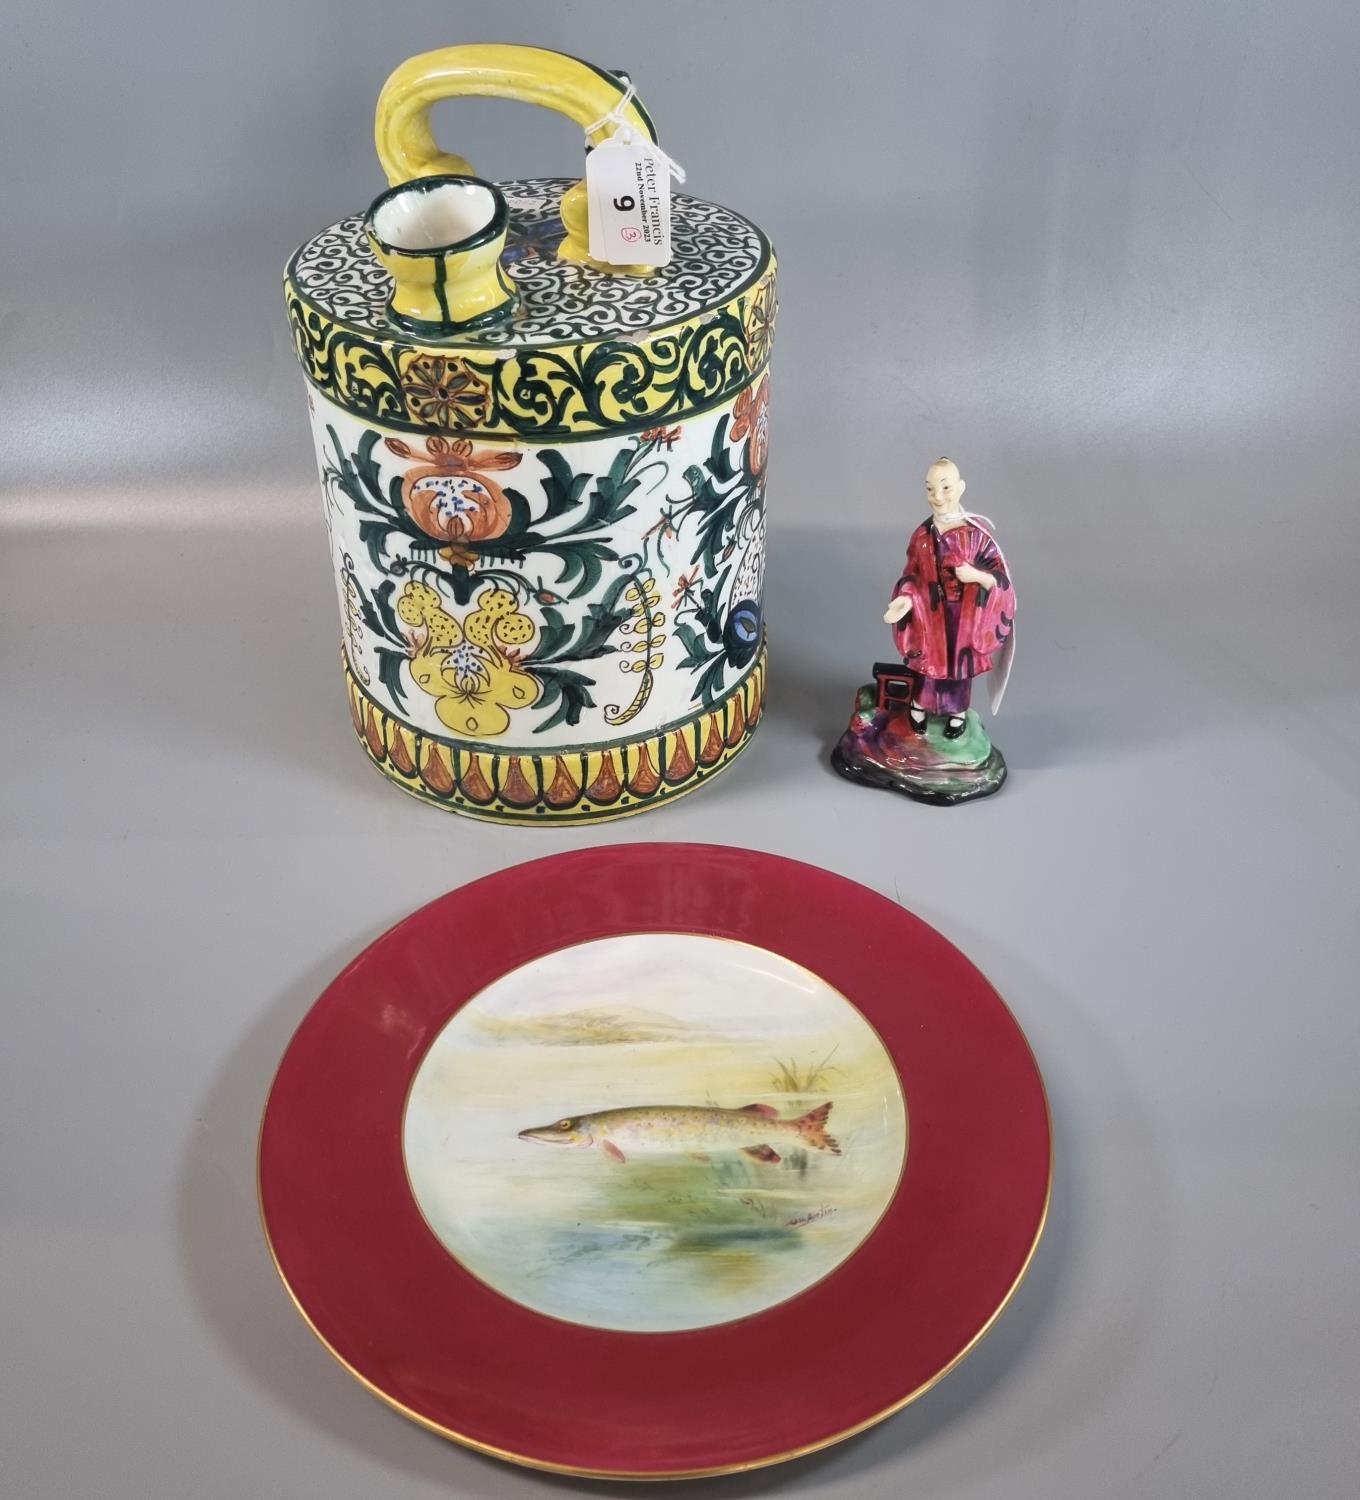 Royal Doulton bone china figurine, 'Ko-Ko' HN1286, together with Royal Worcester porcelain cabinet